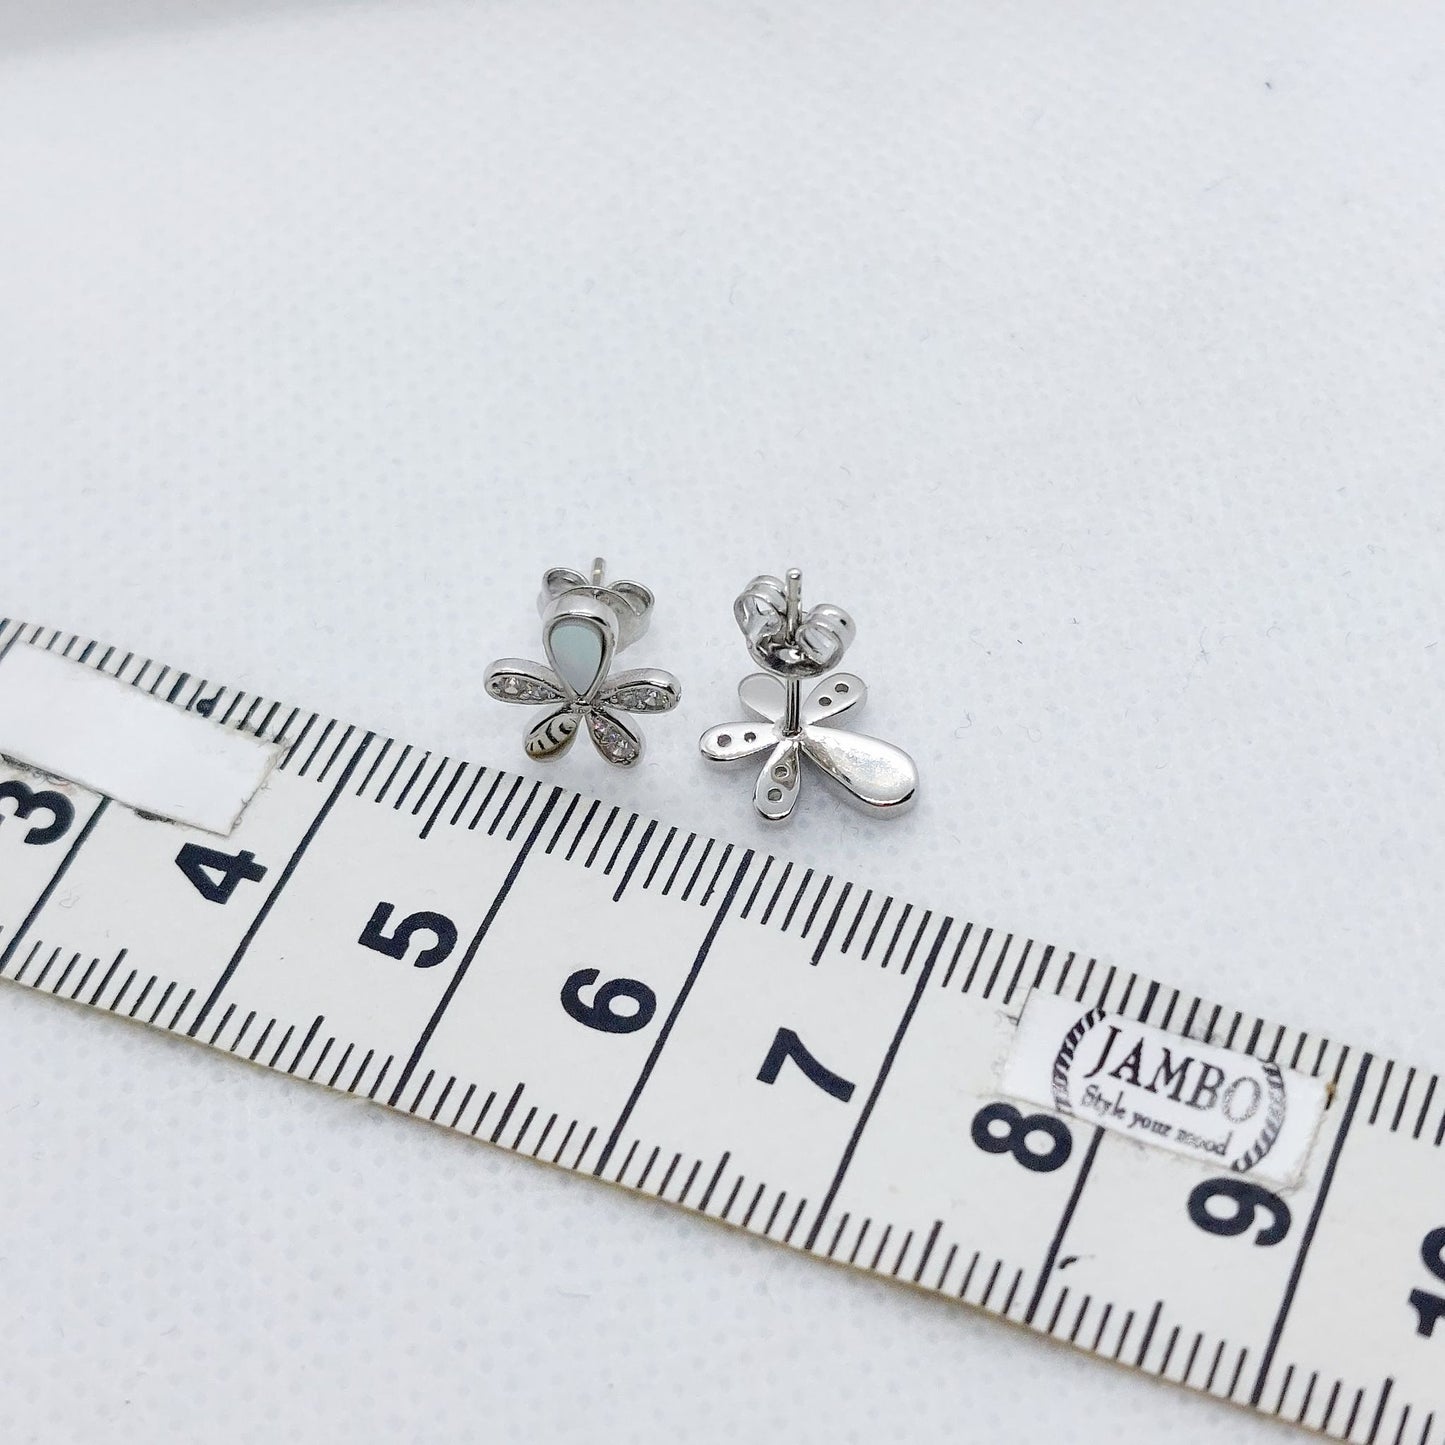 Zircon Flower Stud Earrings - Sterling Silver